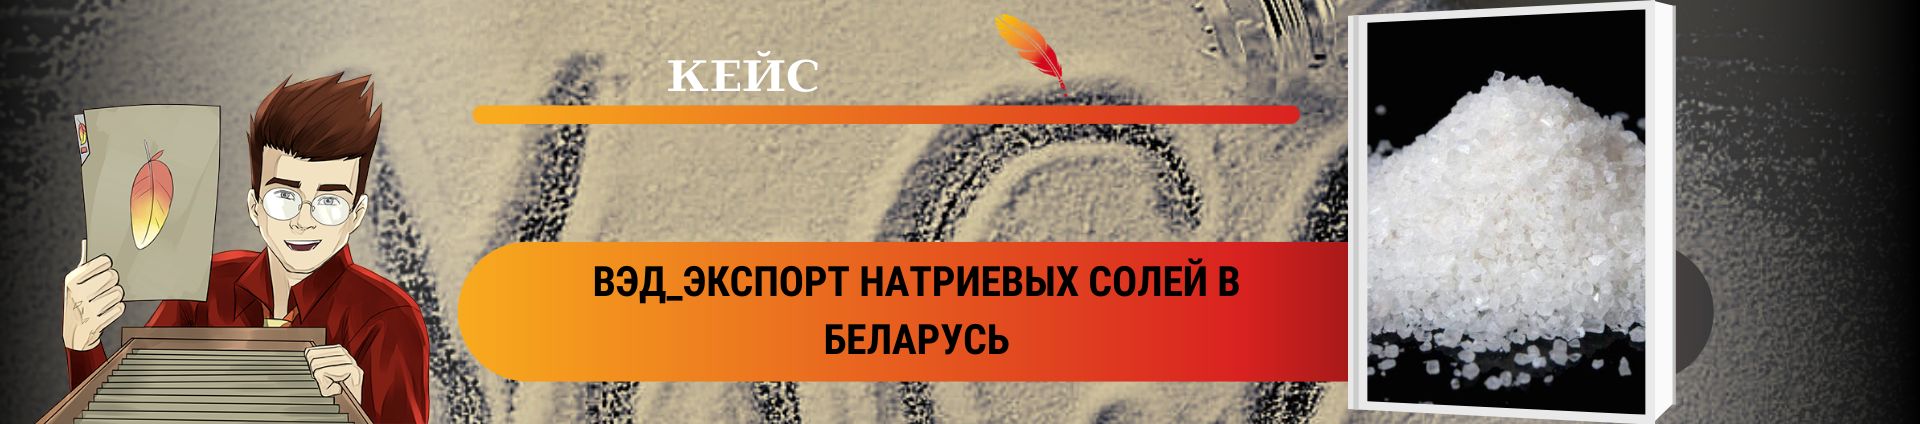 ВЭД_Экспорт натриевых солей в Беларусь